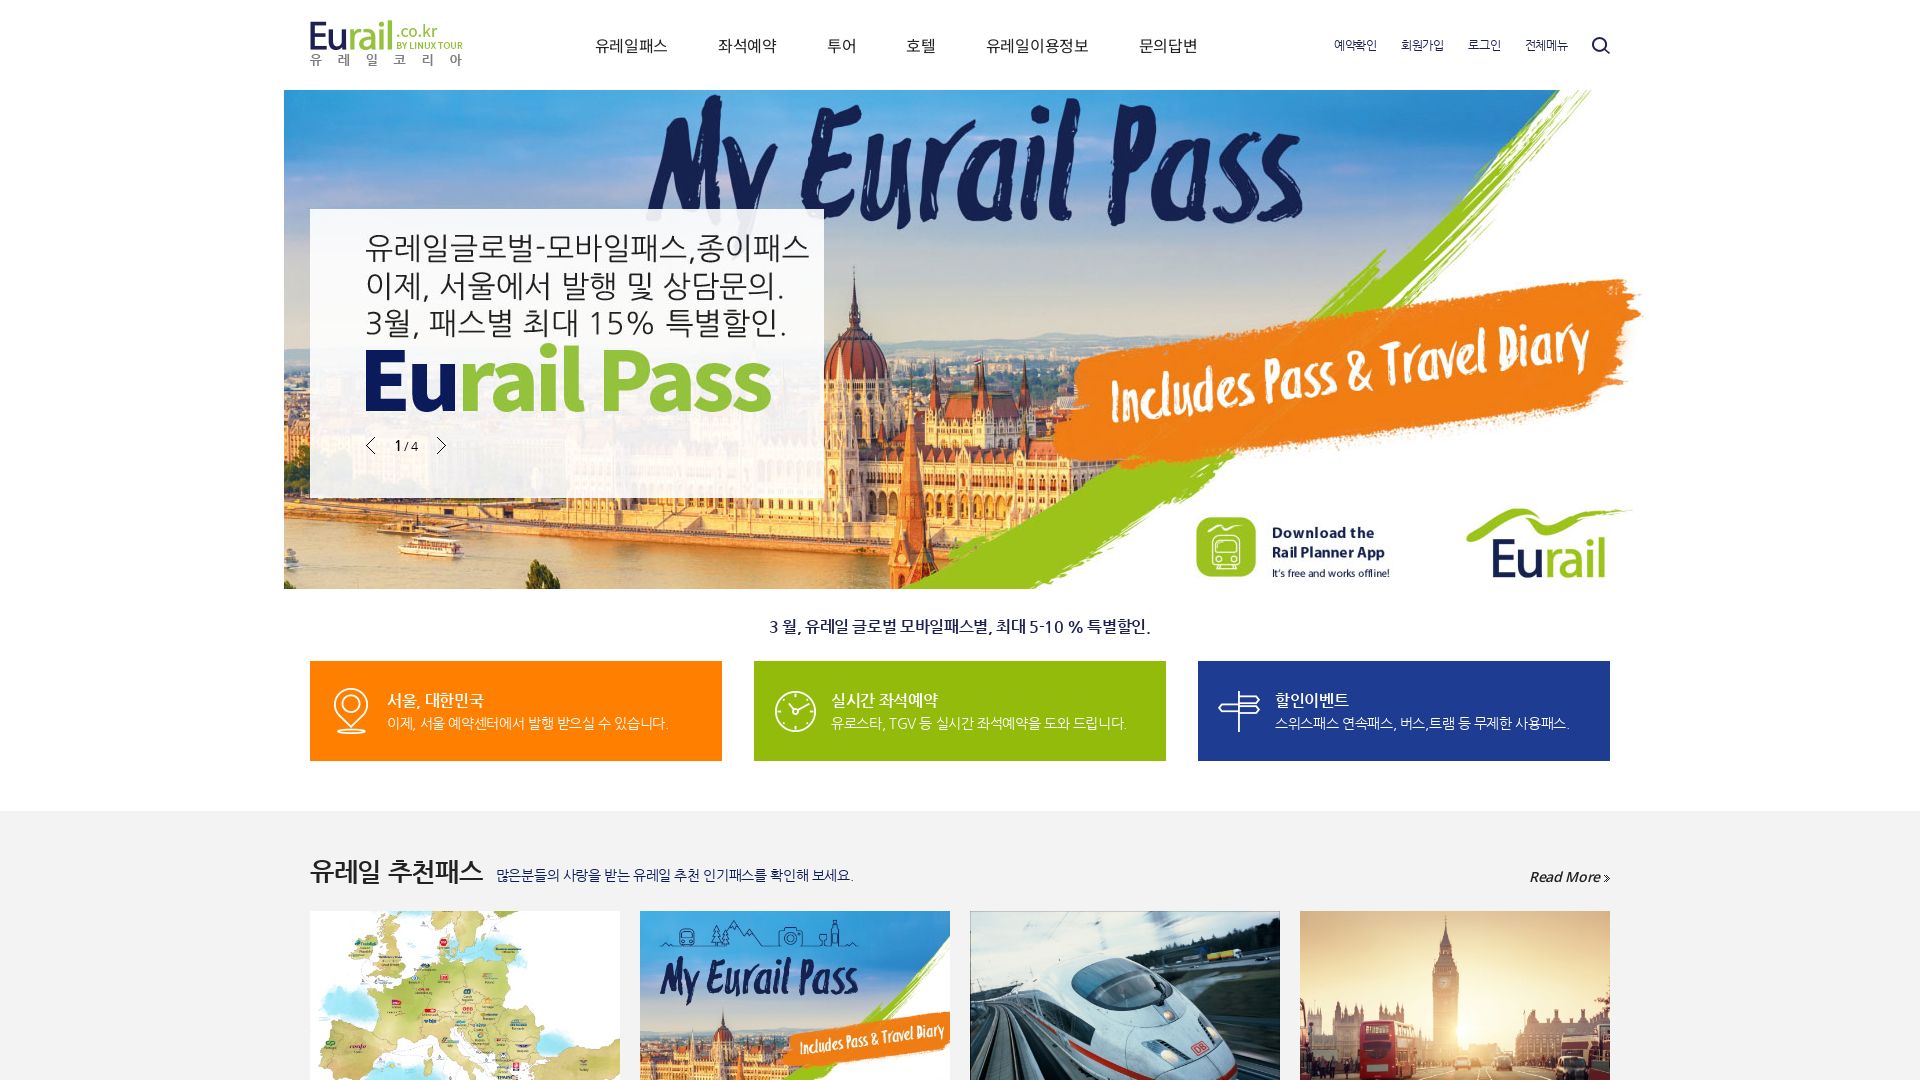 网站状态 eurail.co.kr 是  在线的